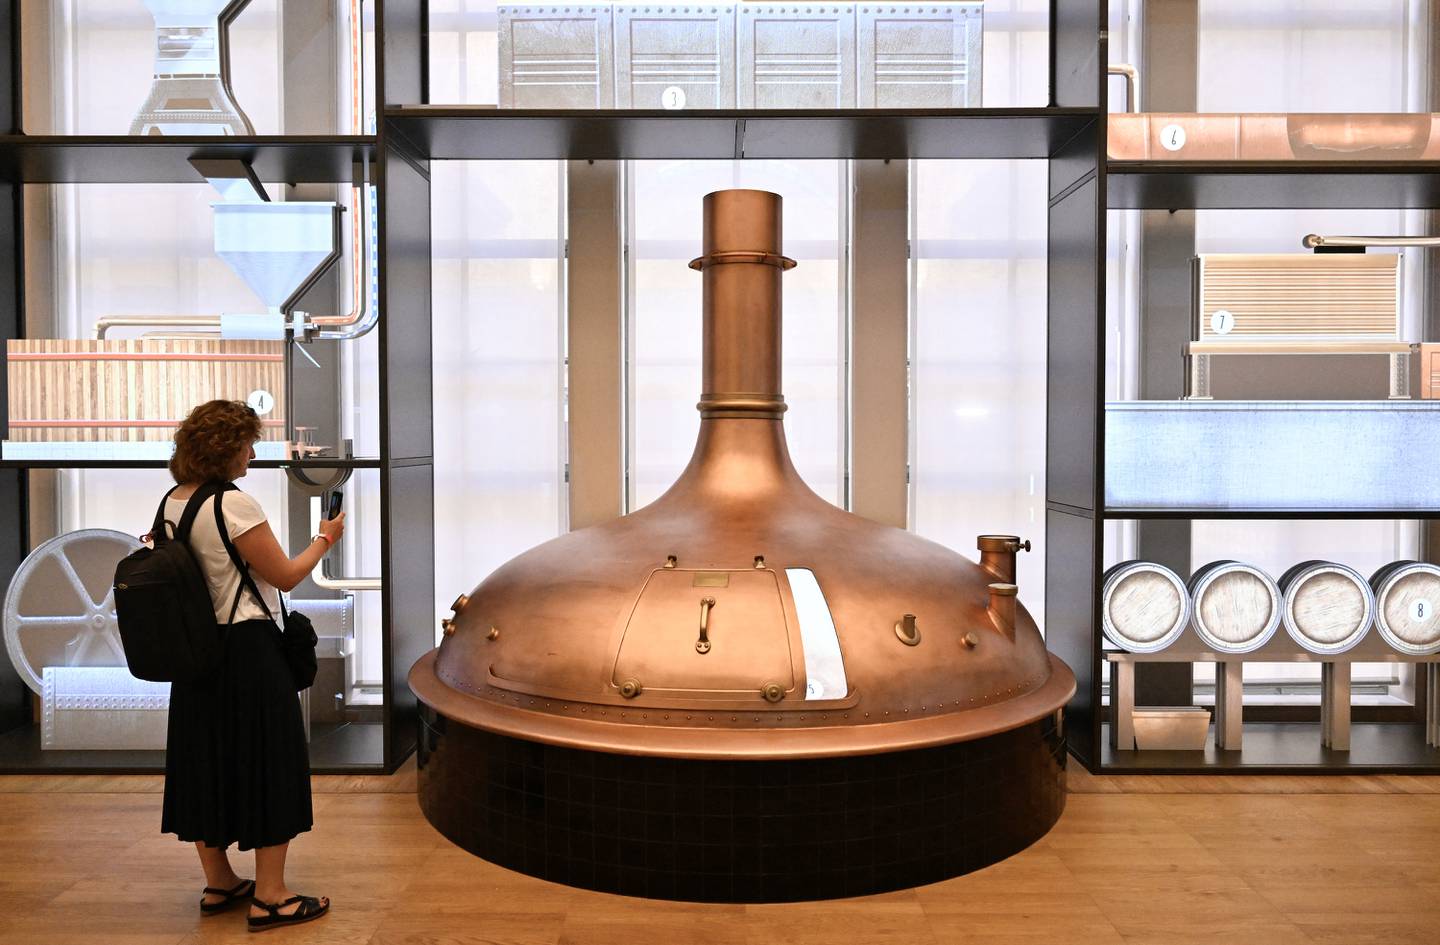 Una mujer conoció este 9 de setiembre un tanque de fermentación en El Mundo de la Cerveza Belga, el centro de experiencias interactivas más grande del mundo dedicado a la cerveza, inaugurado en el renovado edificio de la bolsa de valores de Bruselas. Fotografía: